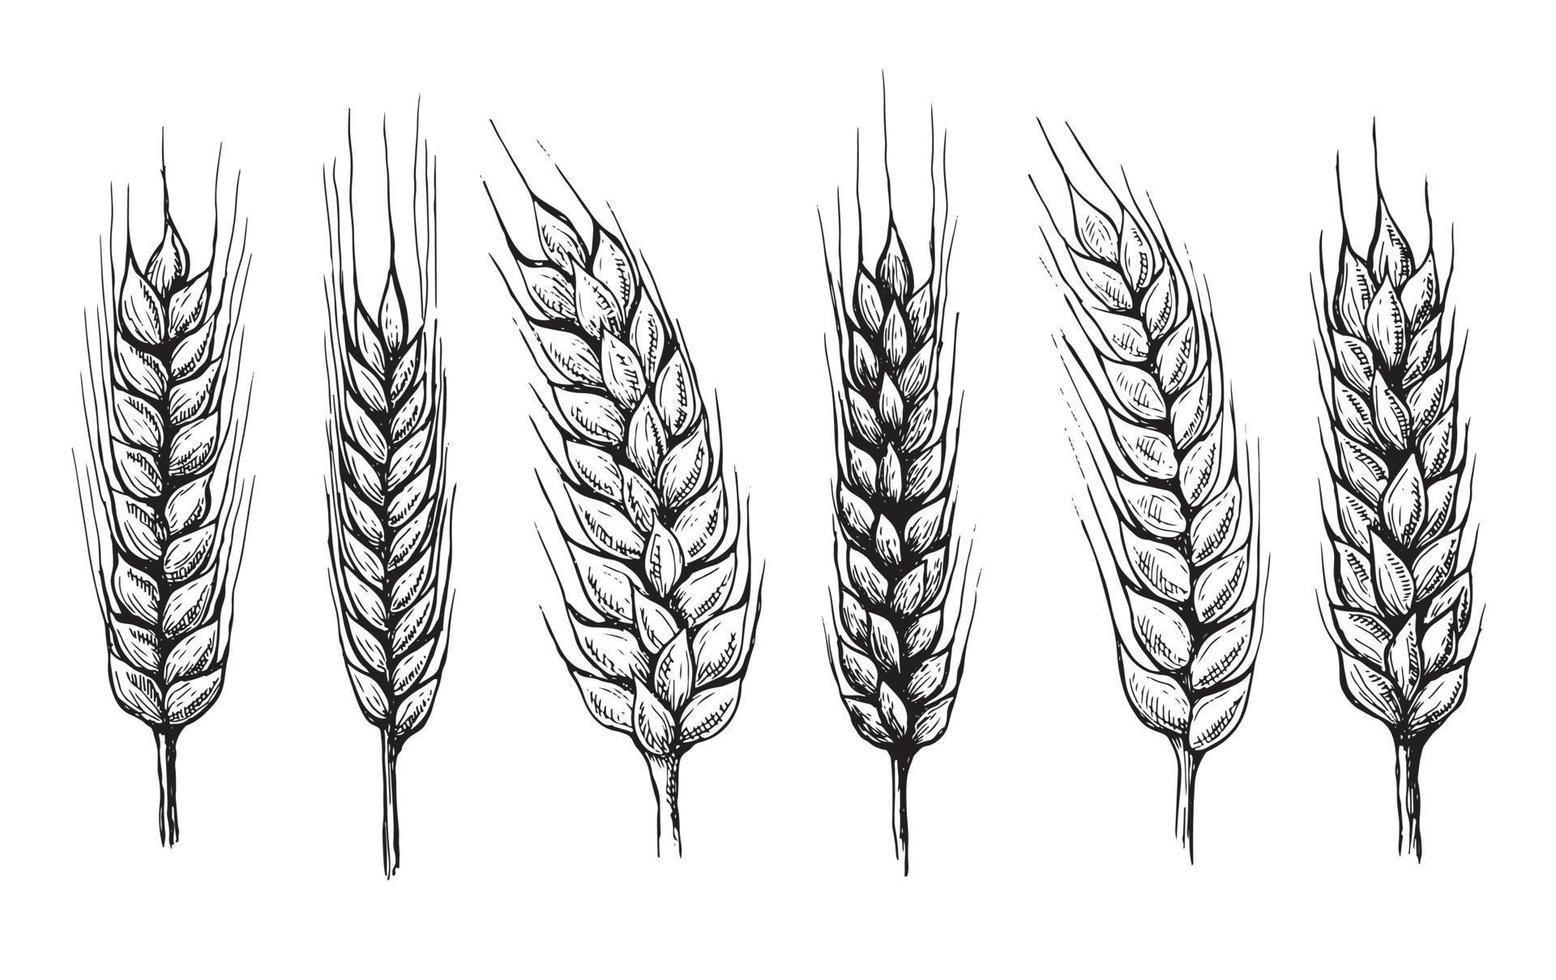 orejas de pan de trigo ilustración vectorial dibujada a mano. vector